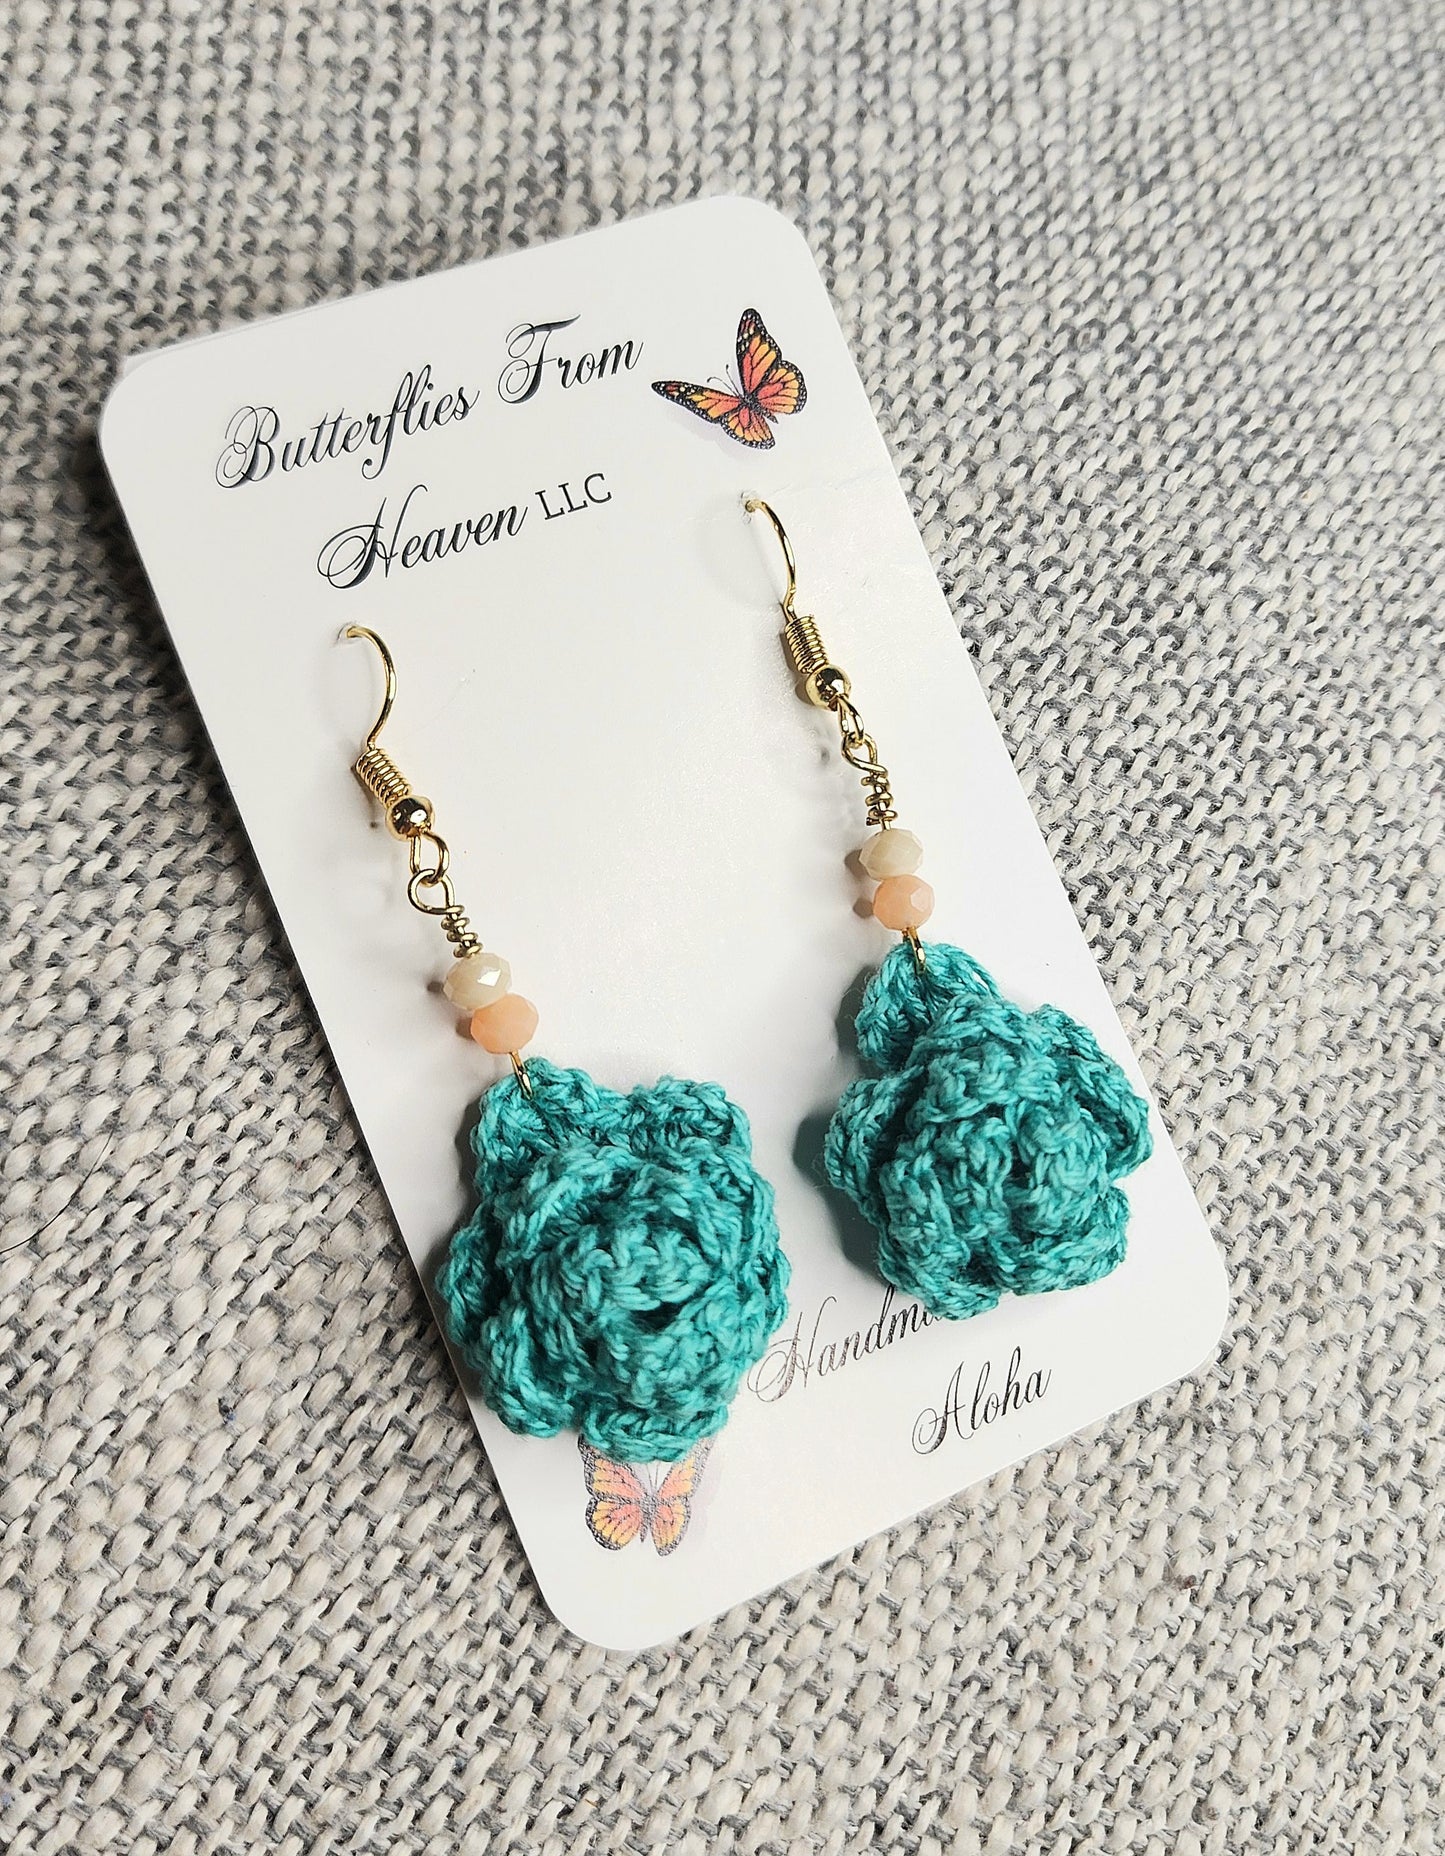 Crochet Lg. 3D Rose earrings - BUTTERFLIES FROM HEAVEN